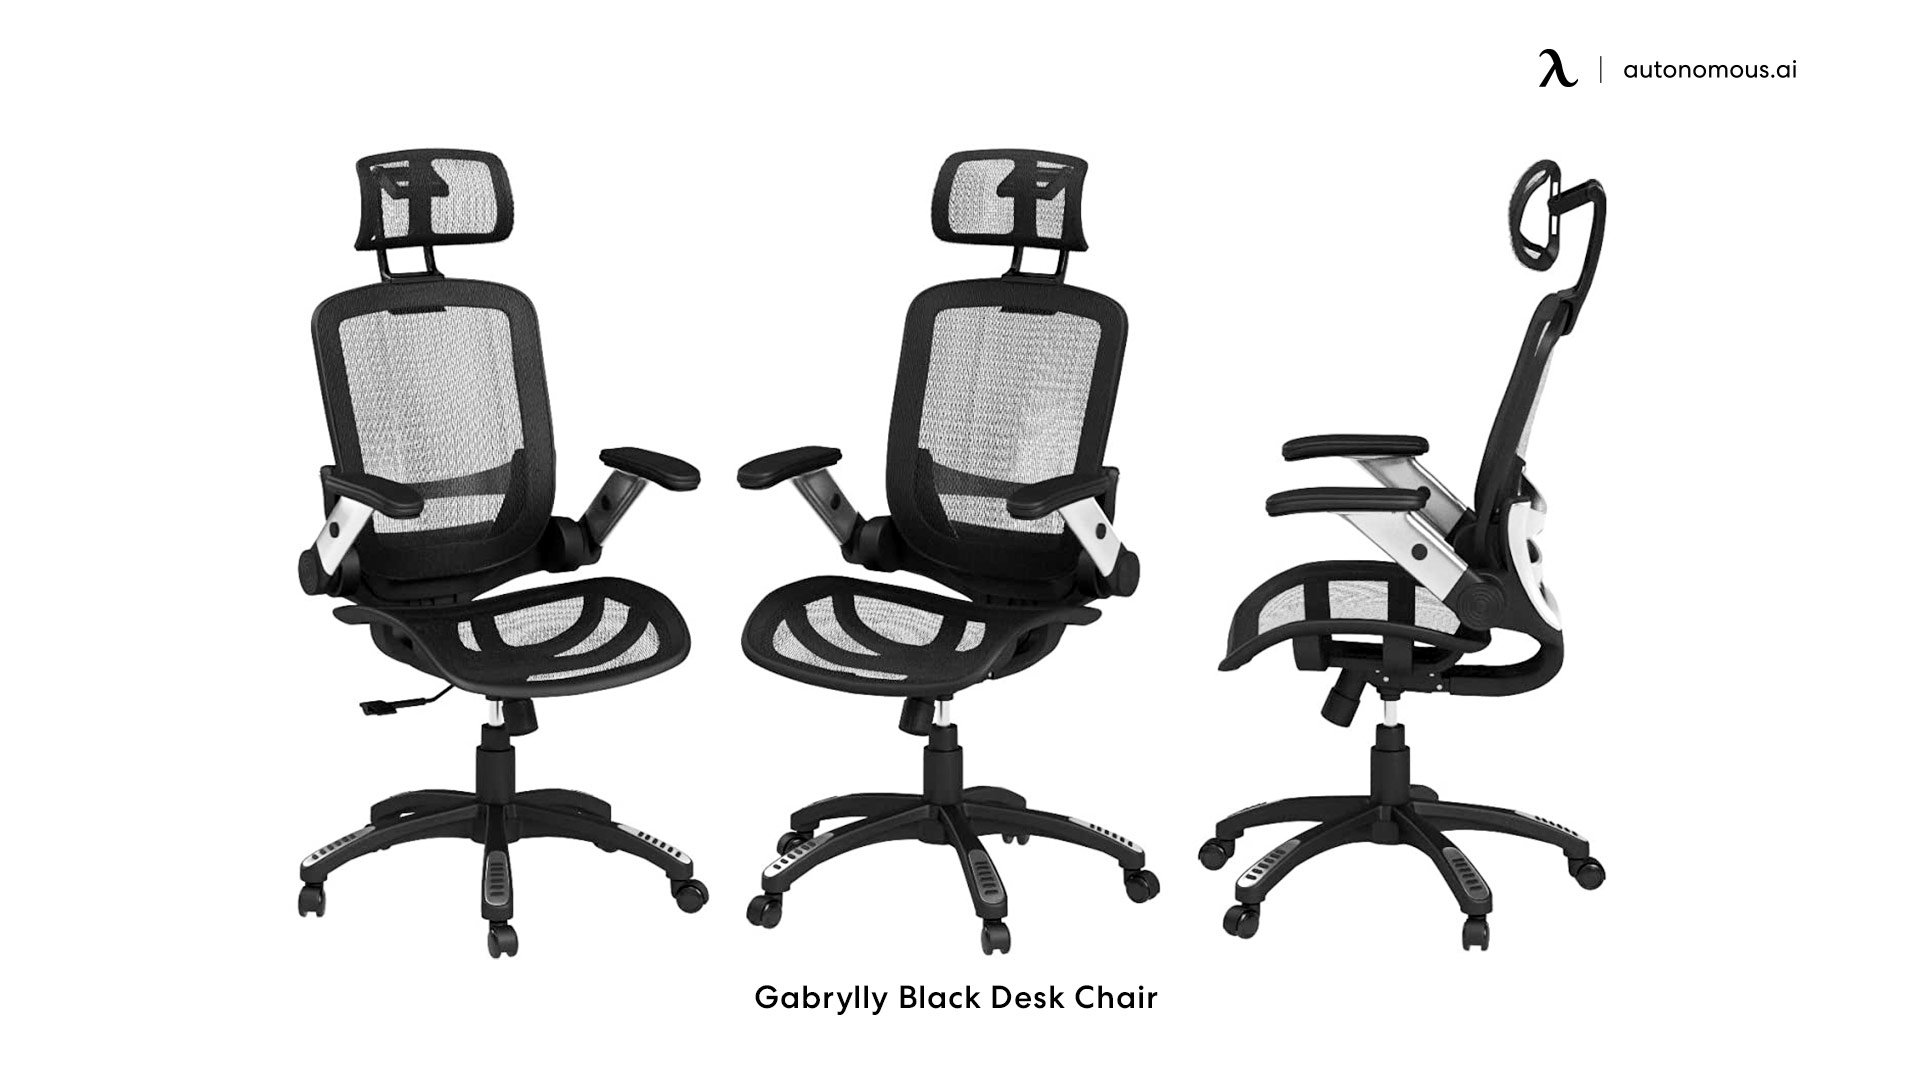 Gabrylly Black Desk Chair